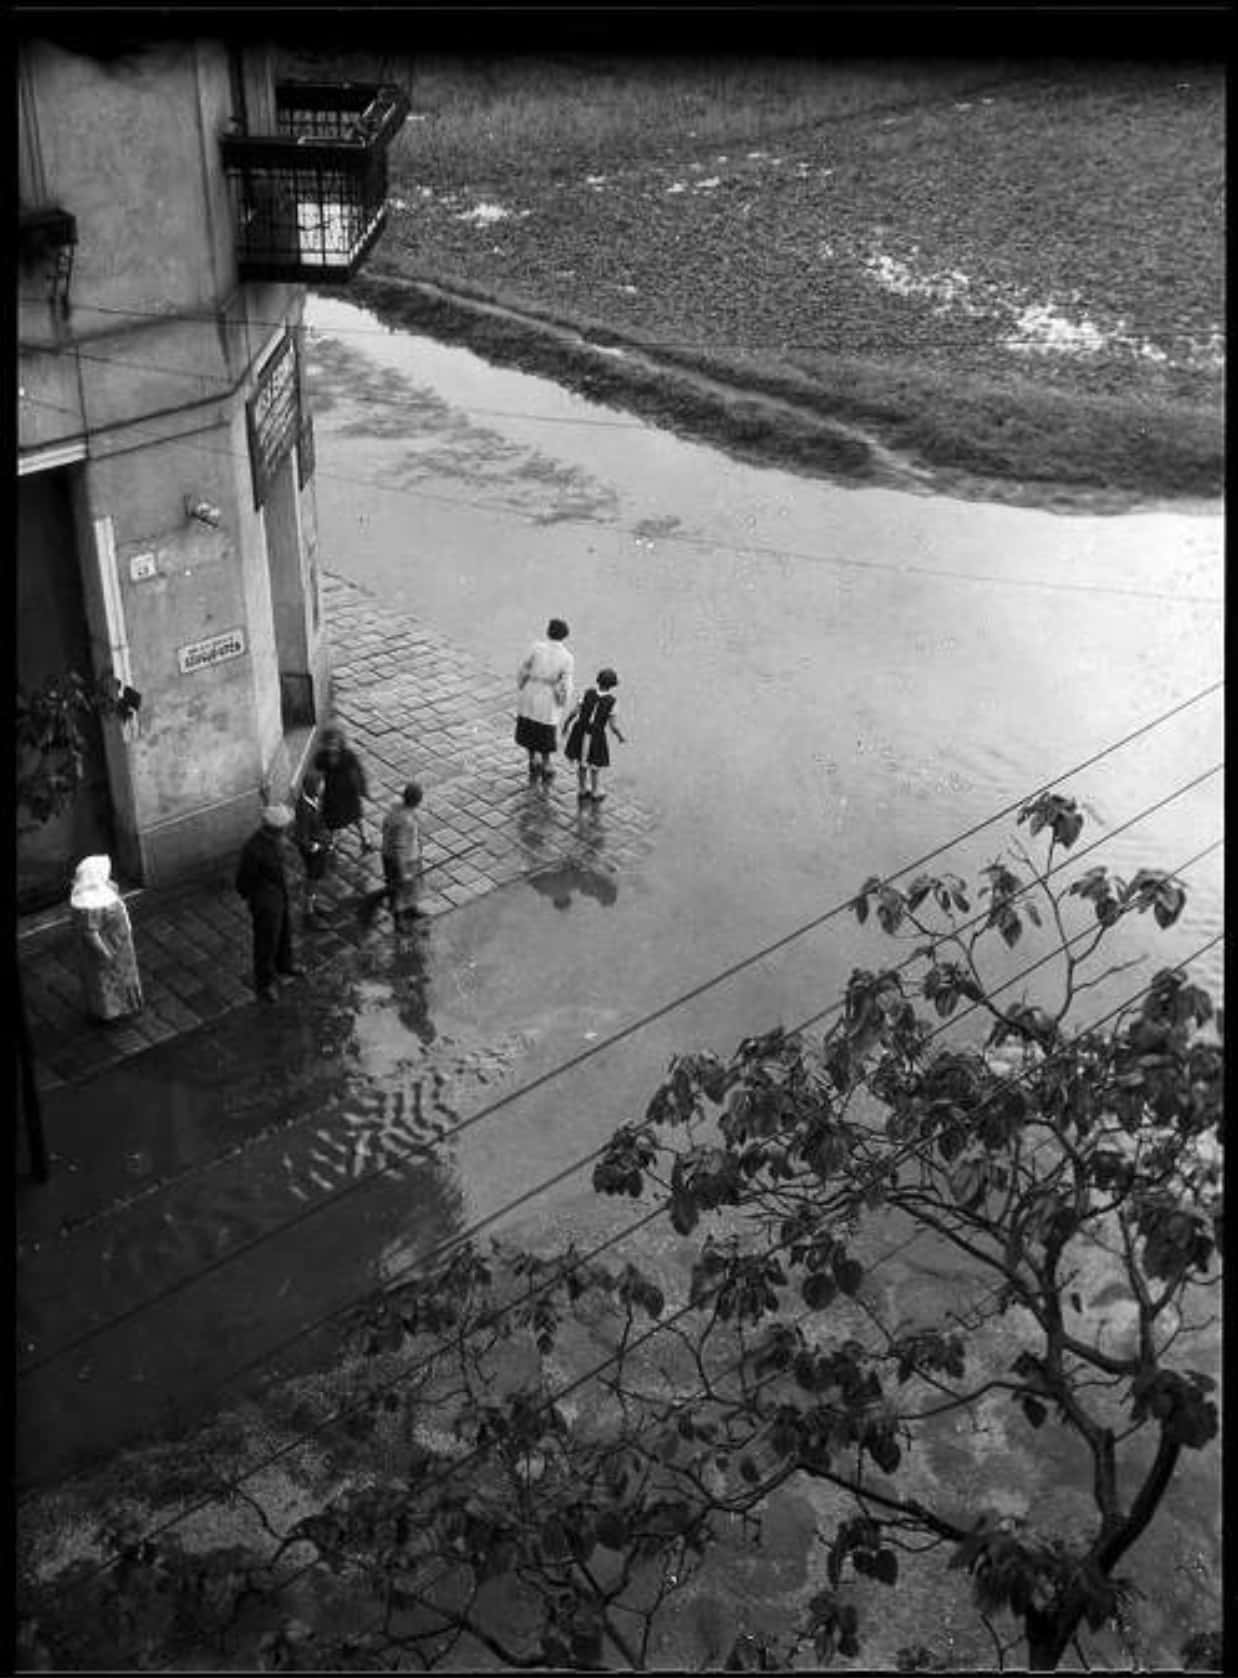 6a. Imre Kinszki, <i>Elöntött utcán</i> (“In a flooded street”), circa 1930 © FSZEK